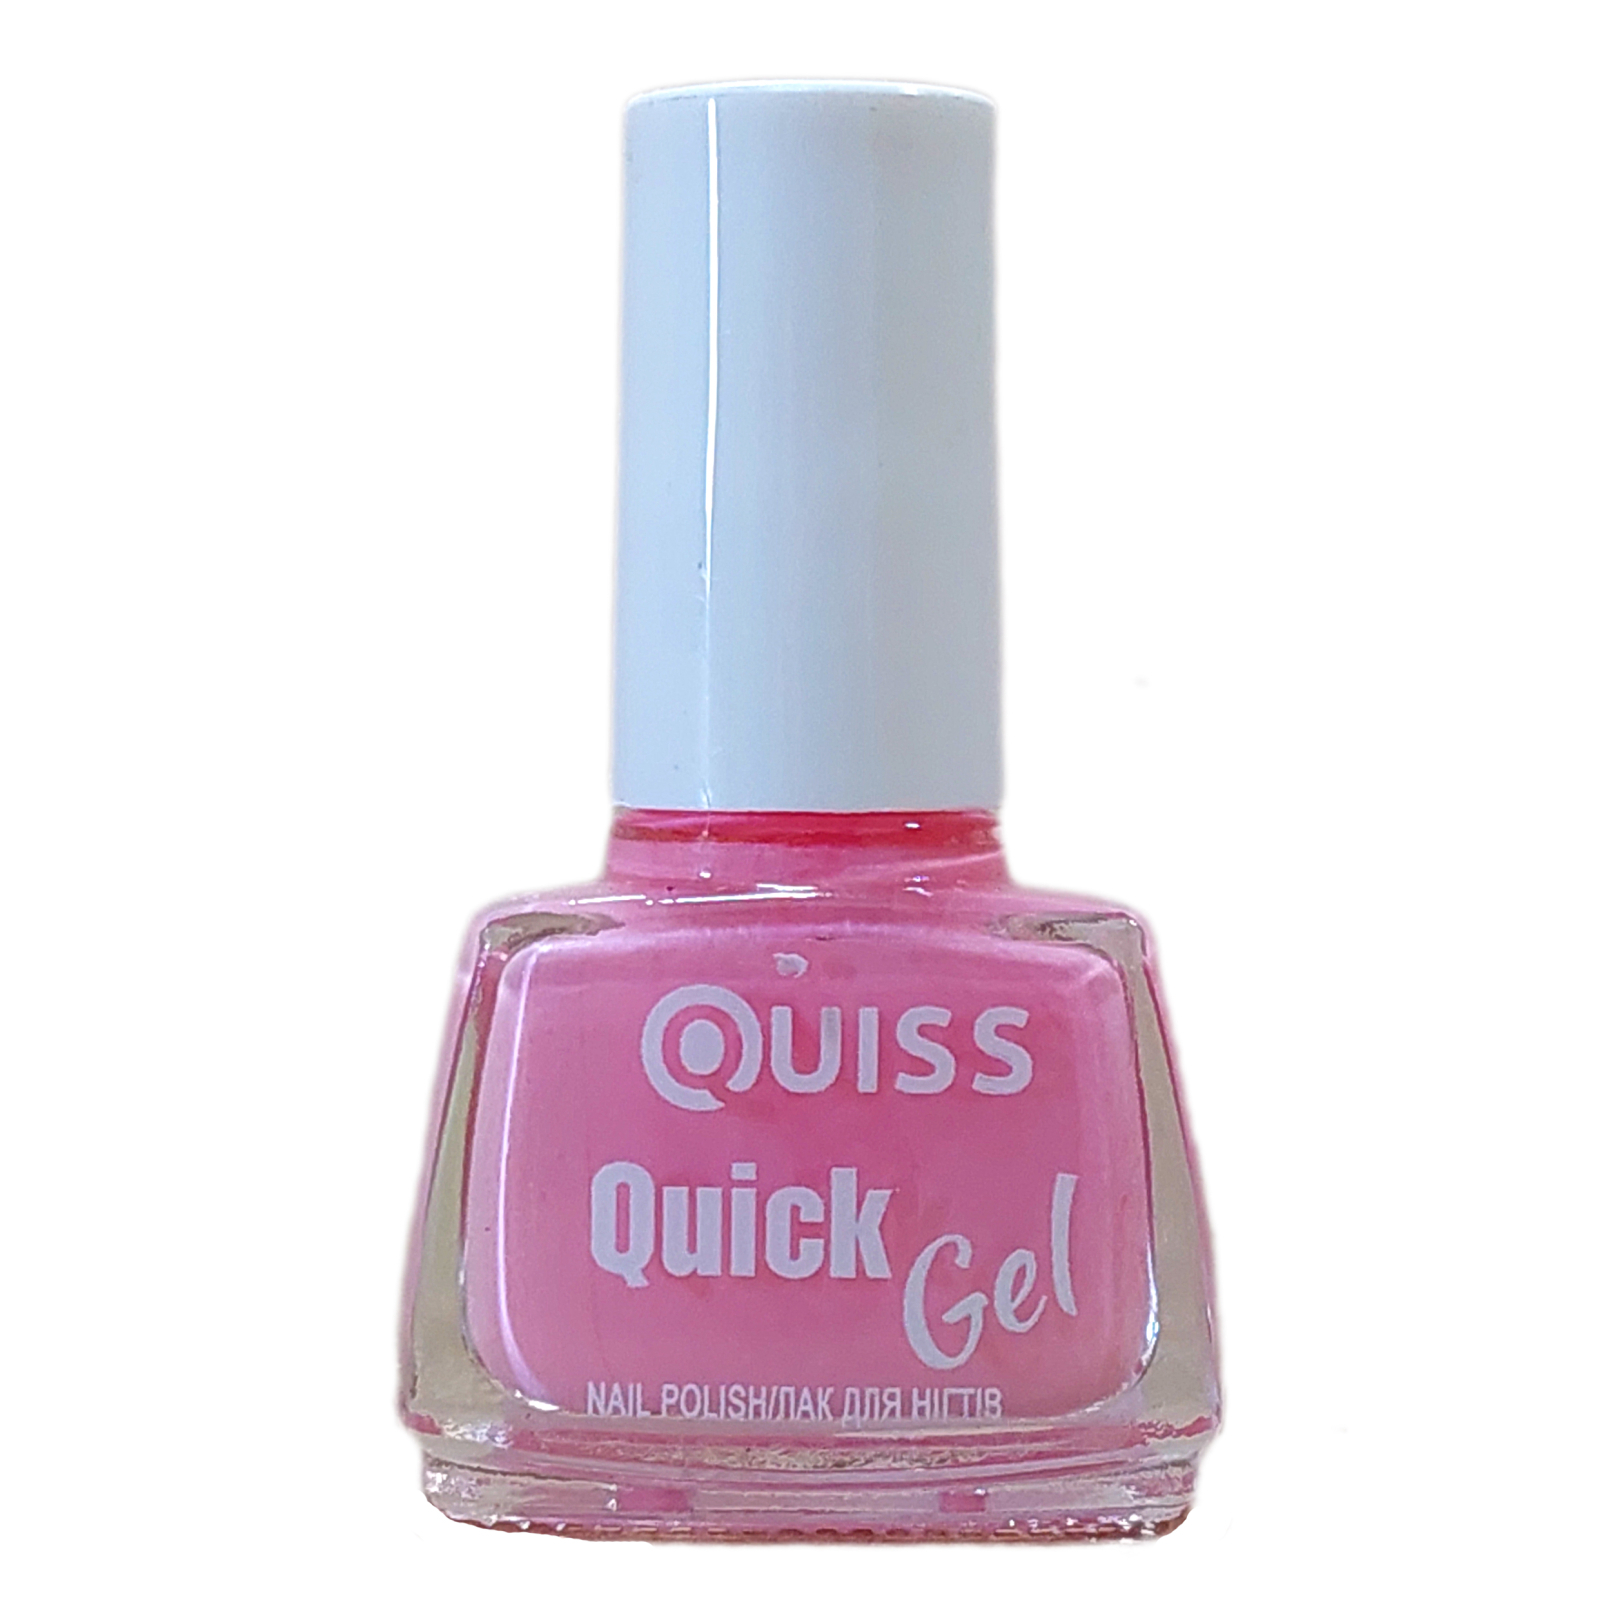 Лак для ногтей Quiss Quick Gel Nail Polish 09 (4823082020782)